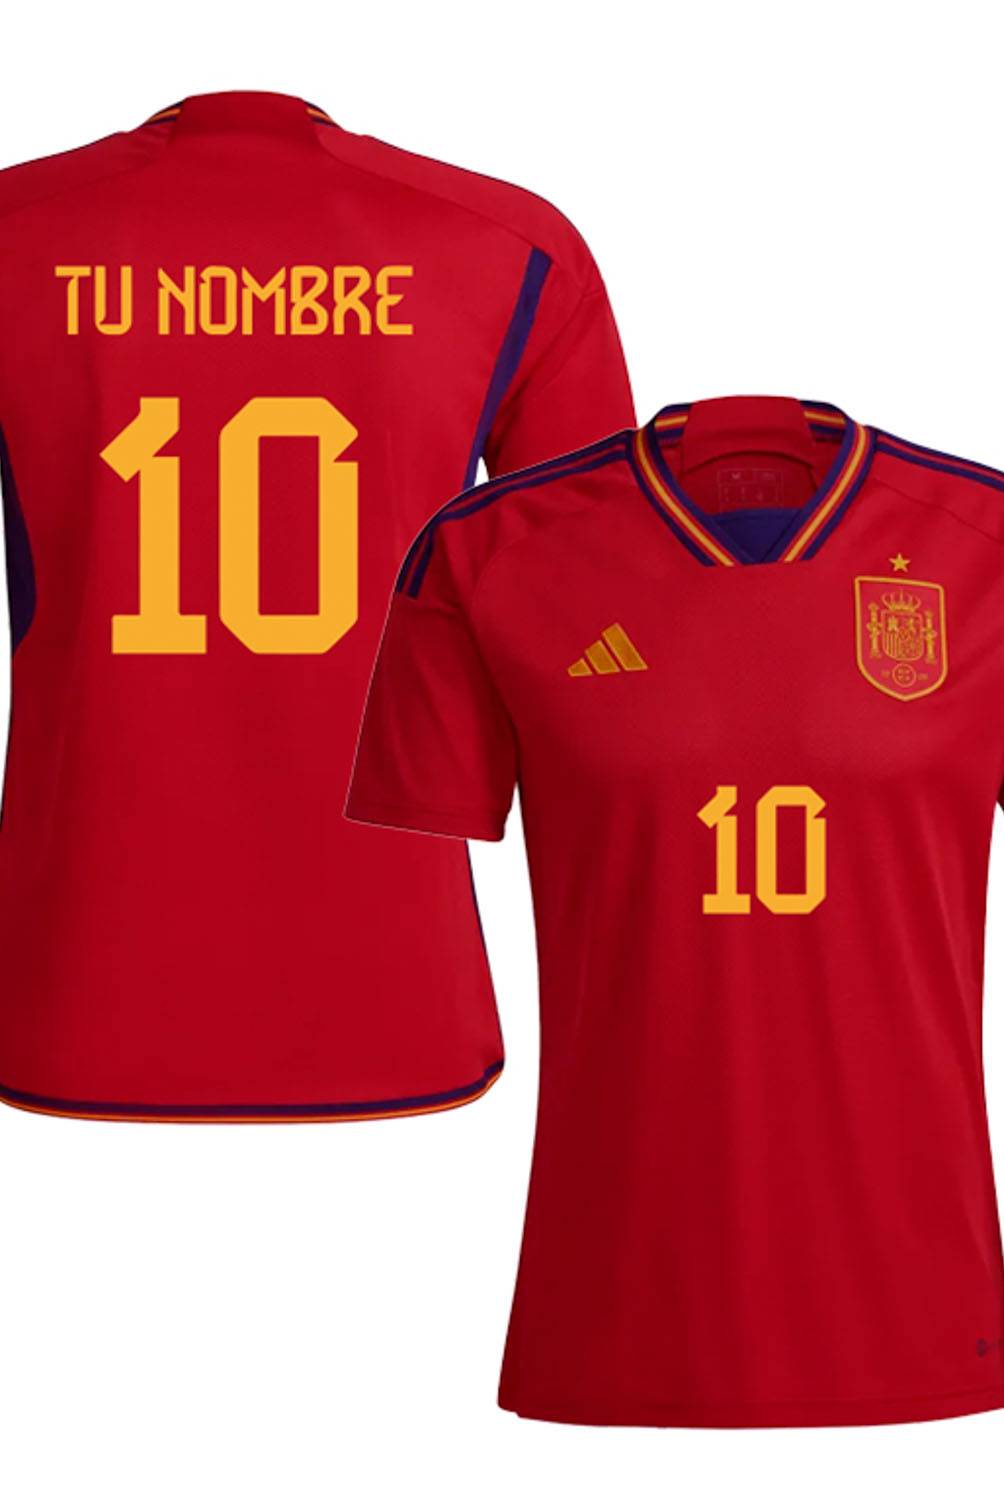 ADIDAS - Camiseta De Fútbol Personificable España Local Hombre Adidas